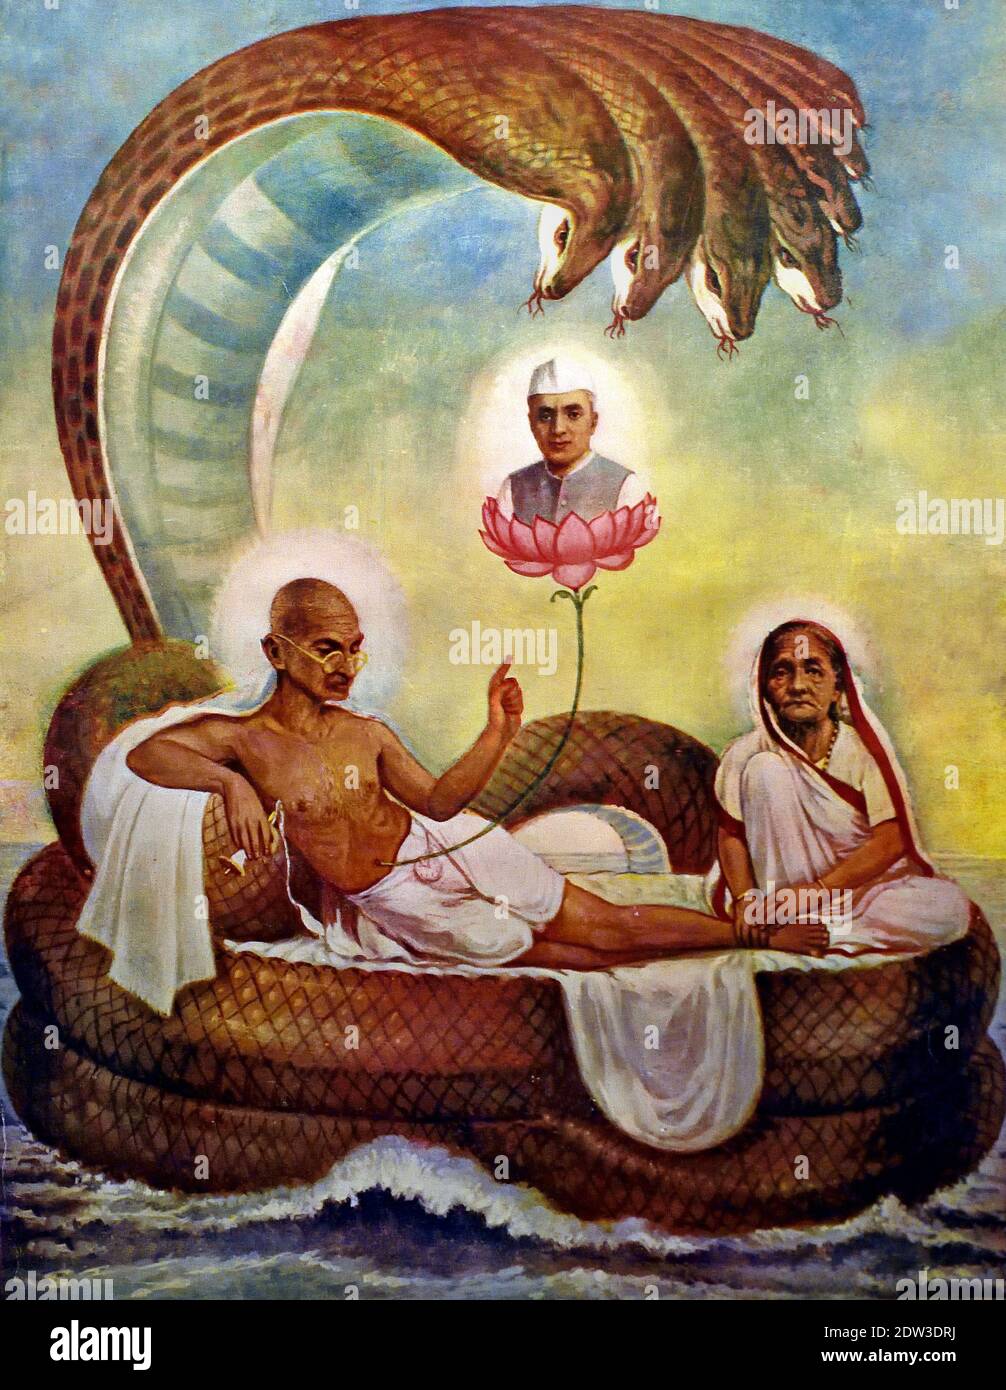 Gandhi als Vishnu auf der Schlange Ananta in Darstellungen von Vishnu wächst aus seinem Nabel ein Lotus, auf dem Brahma sitzt und die Schöpfung symbolisiert. Indien, Inder, ( Mahatma Gandhi (1869-1948, Mohandas Karamchand Gandhi) Freiheitskämpfer und Verfechter gewaltfreier Kampagnen. Land. ) Stockfoto